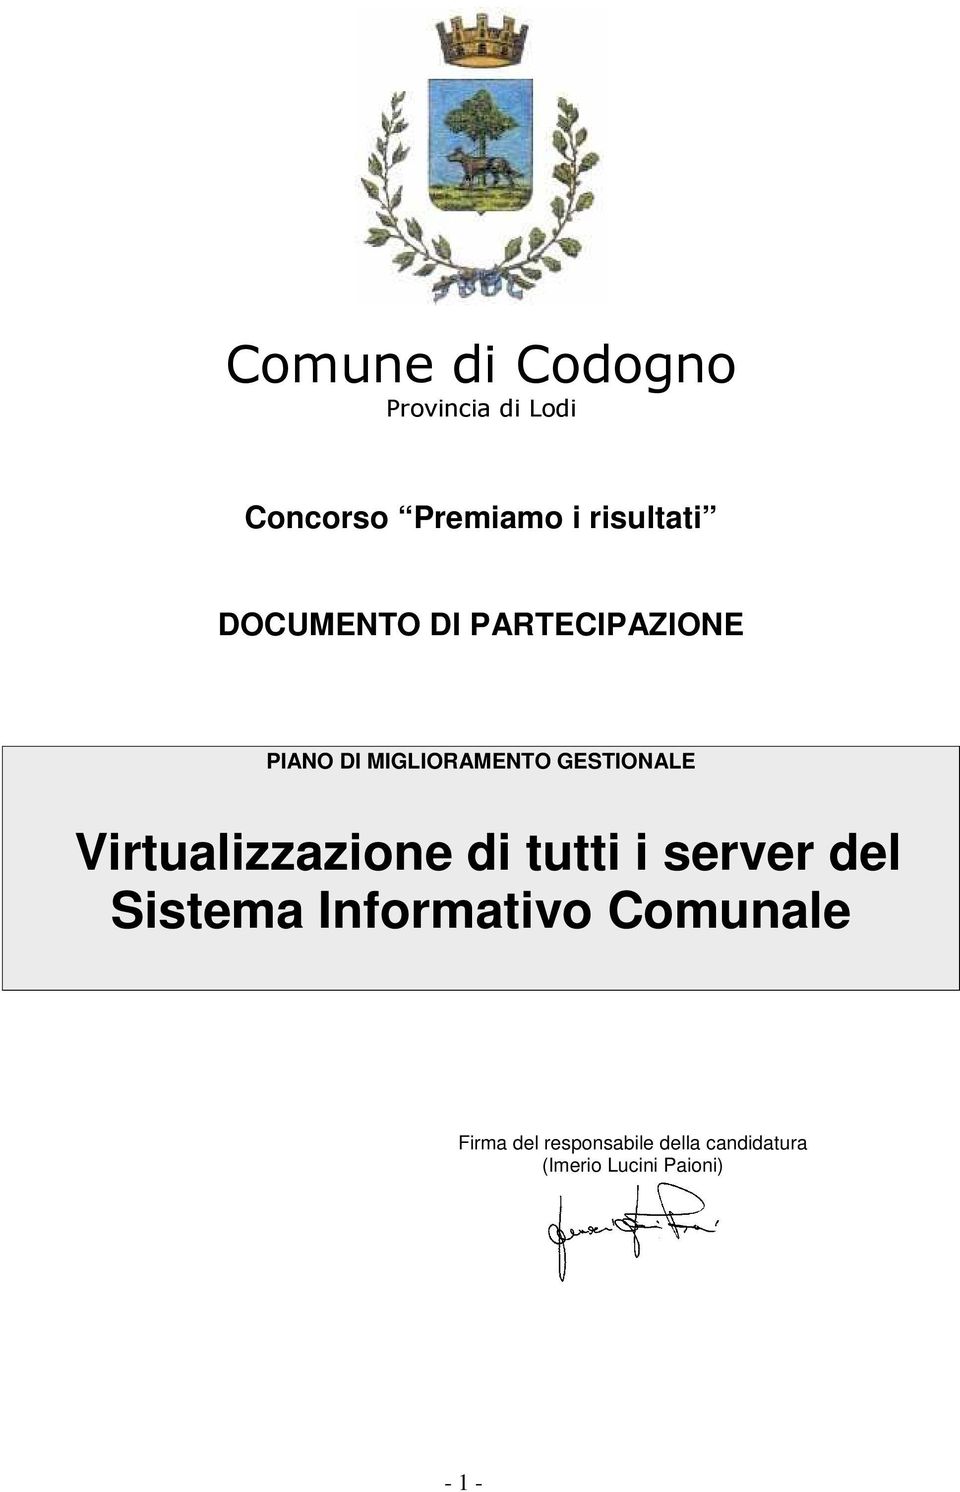 Virtualizzazione di tutti i server del Sistema Informativo